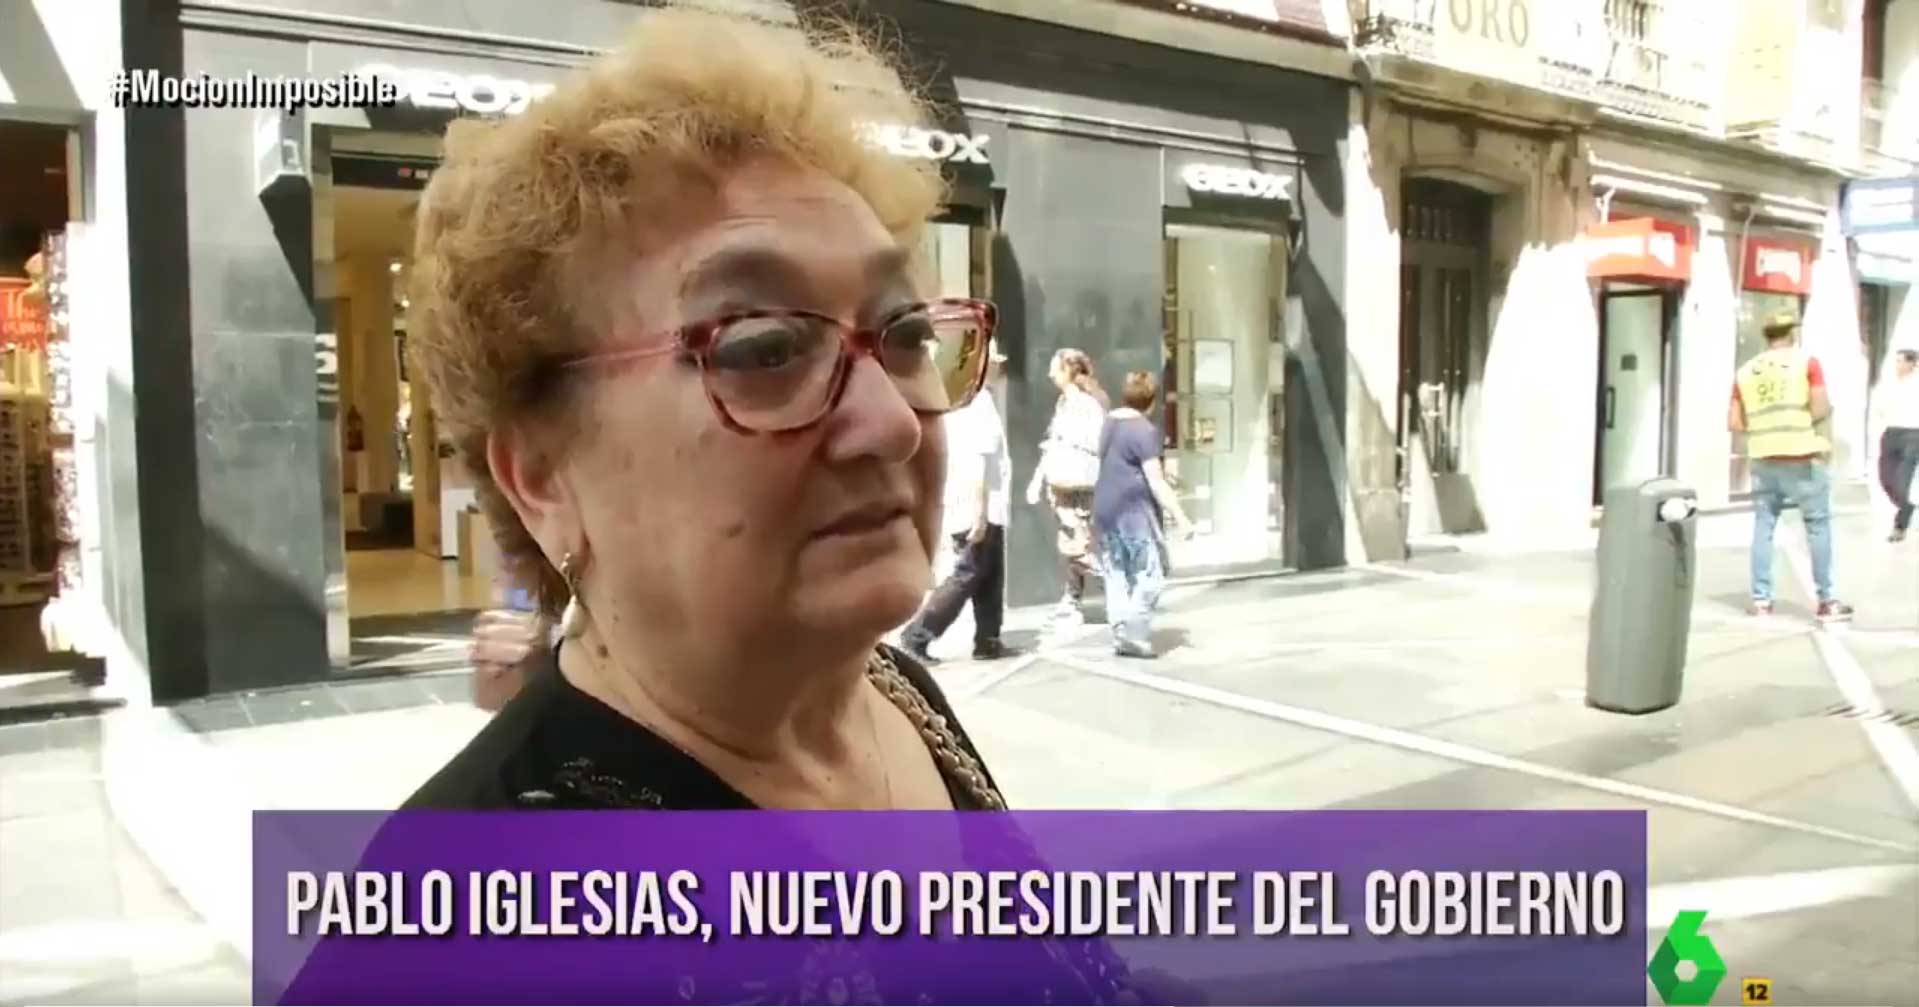 Broma de El Intermedio con Pablo Iglesias como presidente